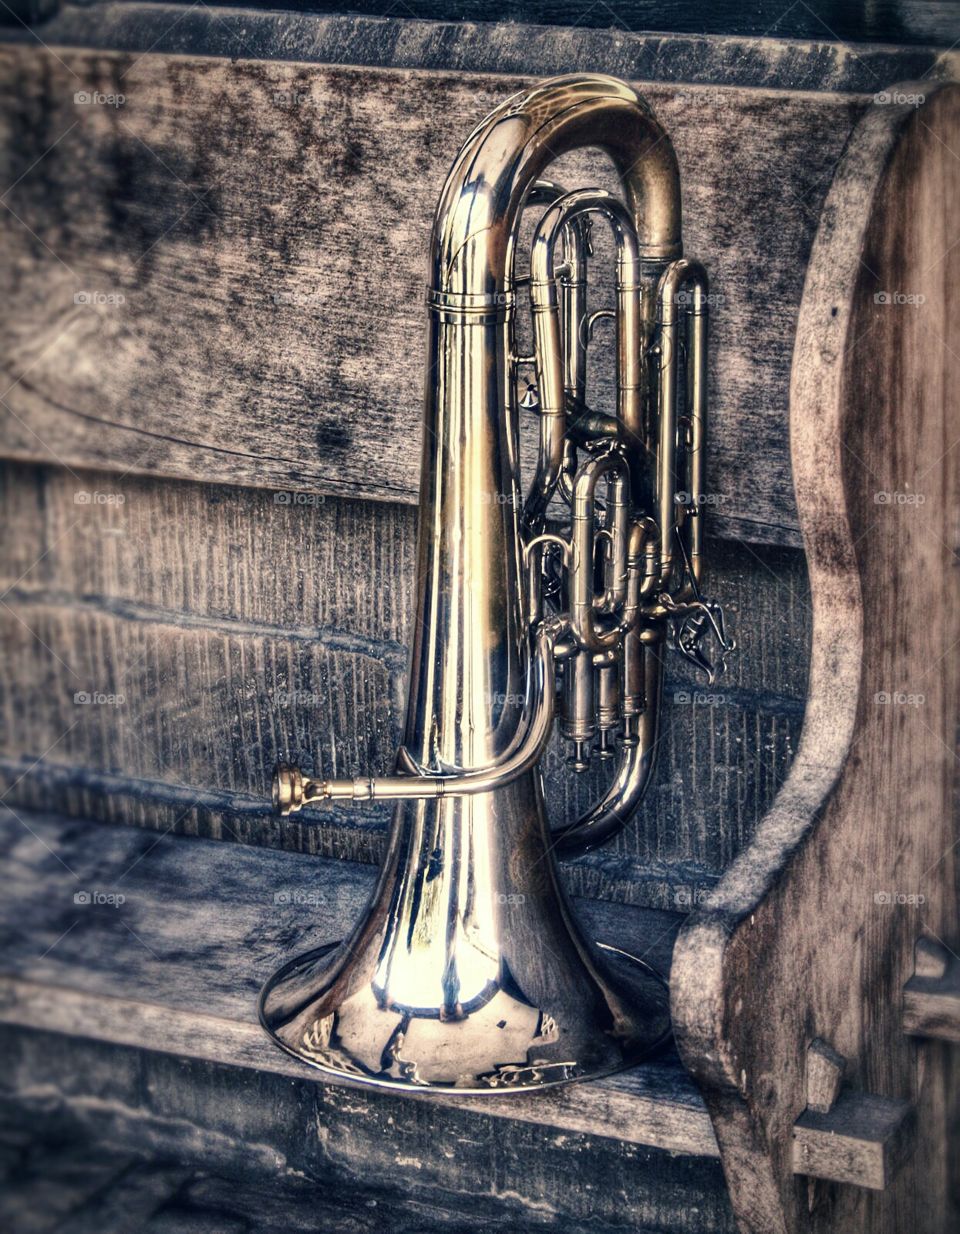 brass instruments